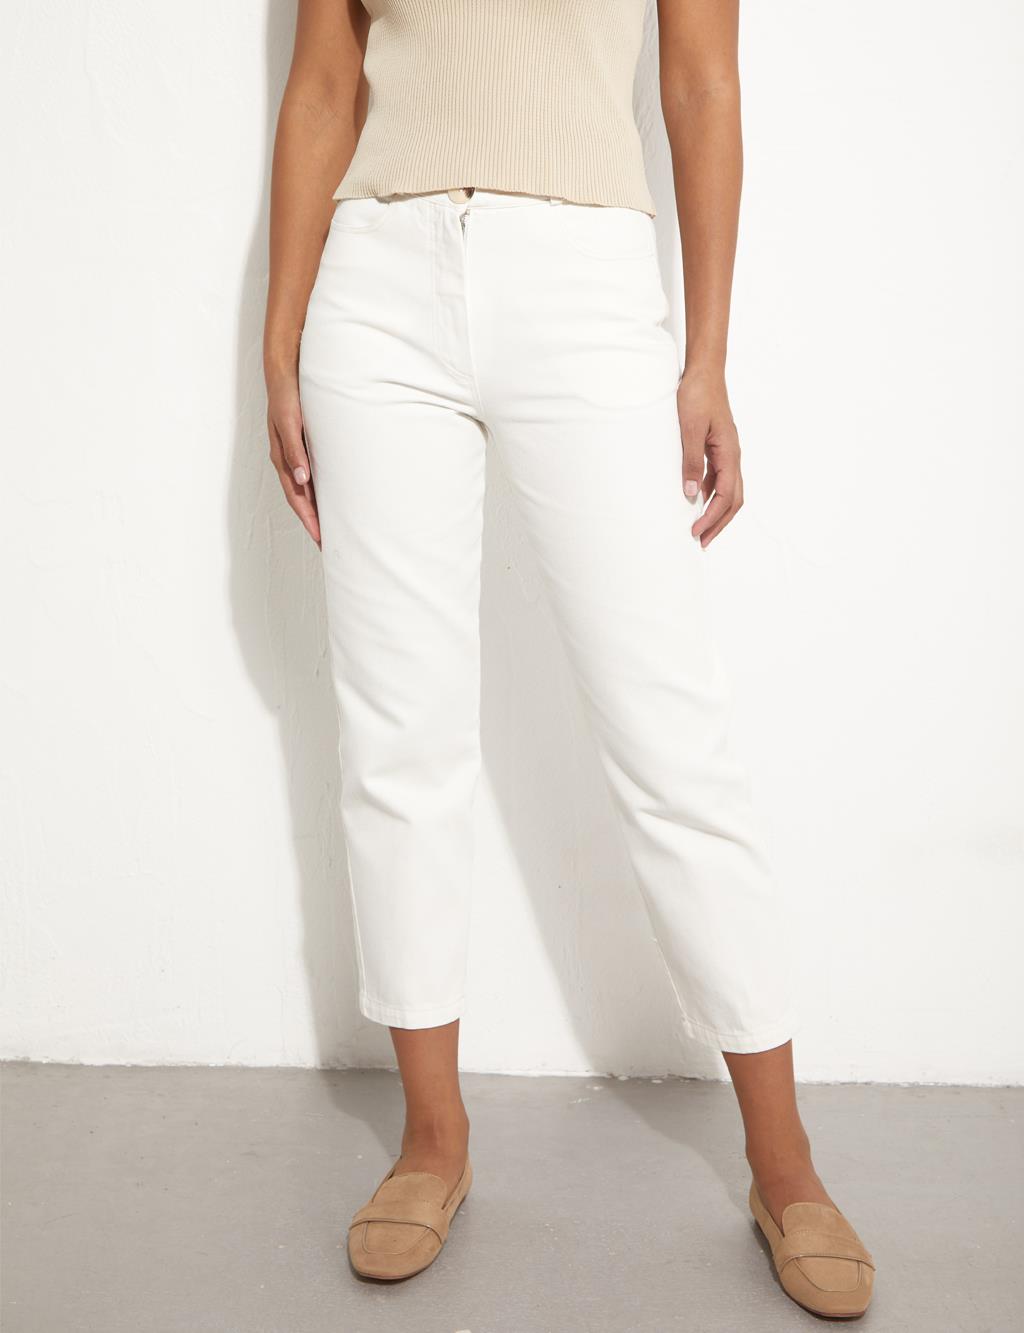 Короткие джинсовые брюки кремового цвета Kayra кремового цвета комо брюки lauren manoogian